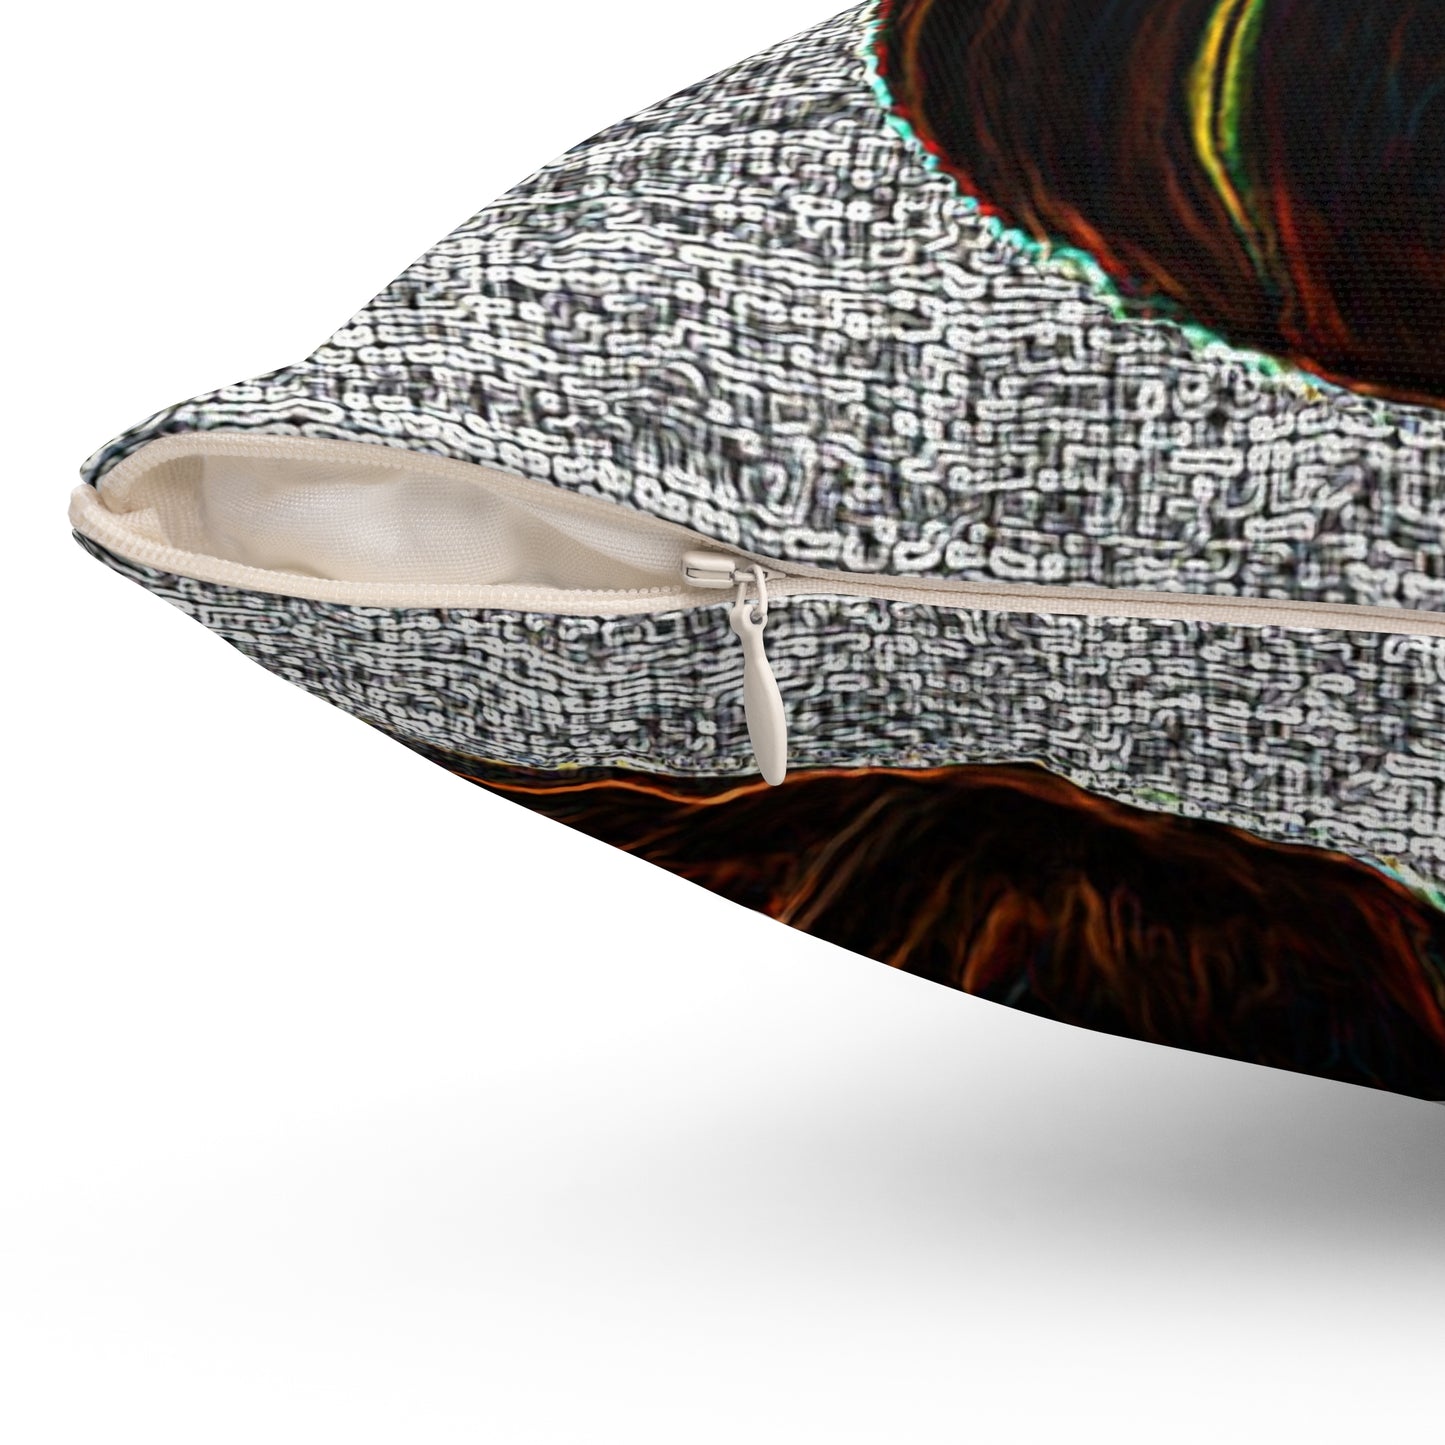 Kürbis-Kissen – quadratisches Wurfkissen aus gesponnenem Polyester mit Einlage